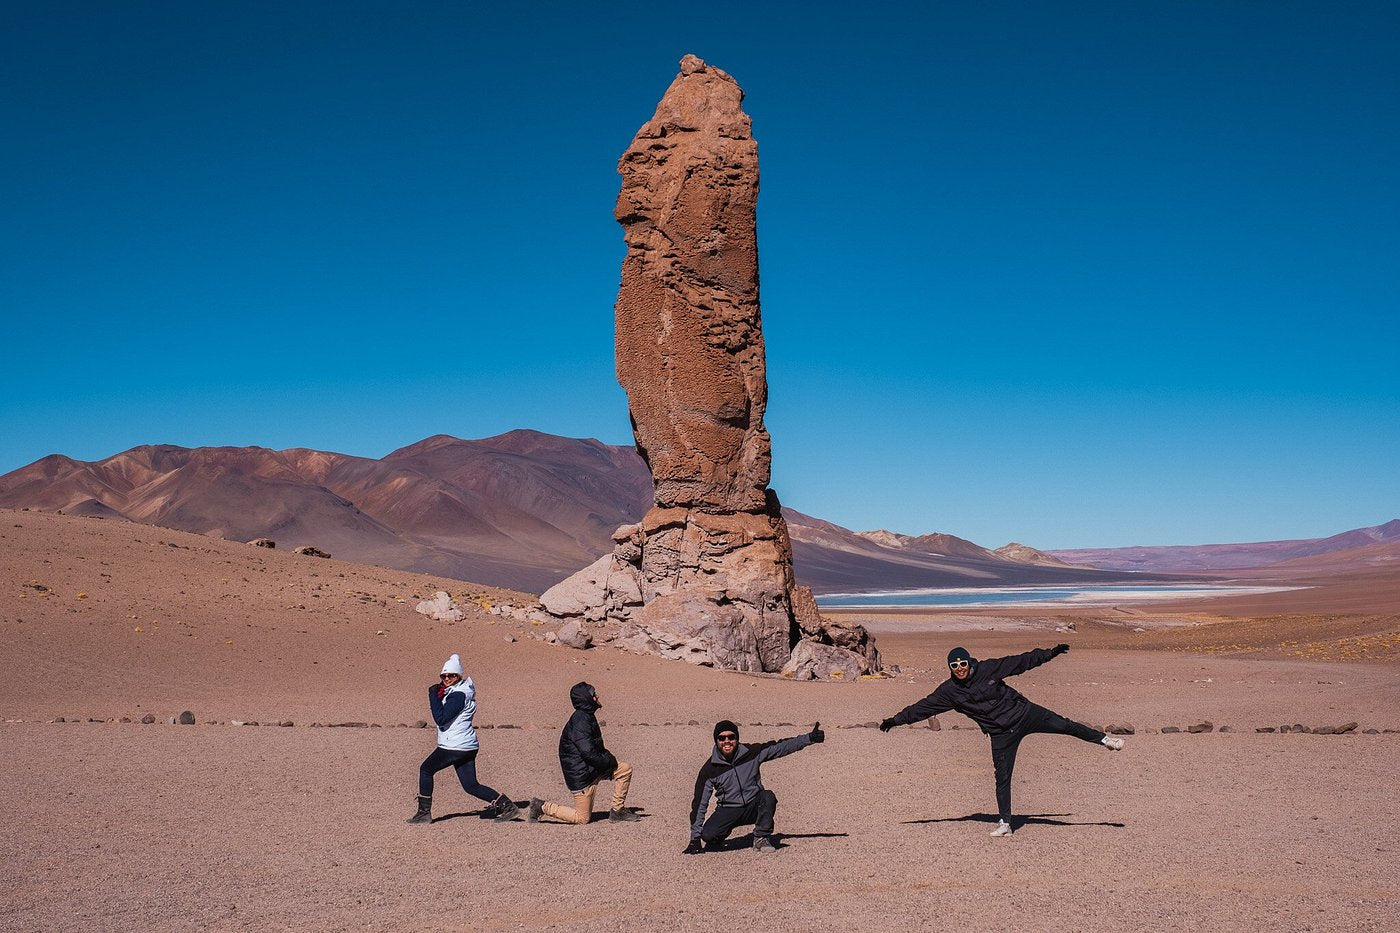 Full Day Ruta de los Salares | Desde San Pedro de Atacama - Ojos Viajeros 